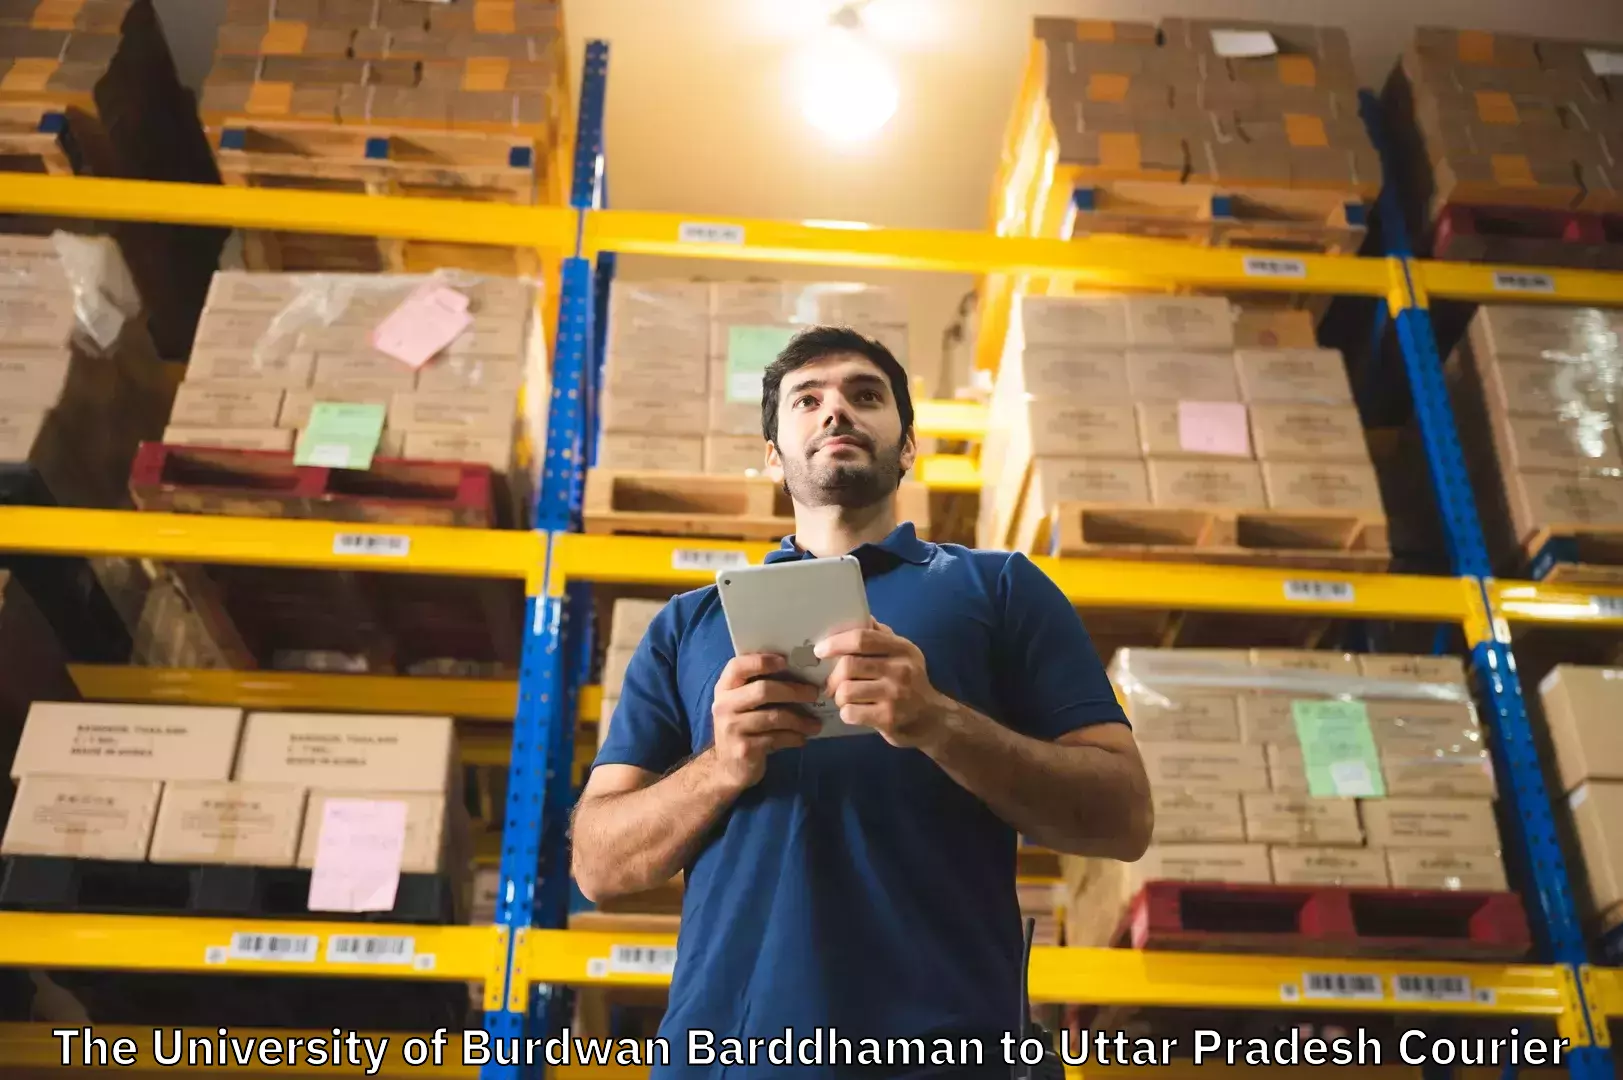 Luggage shipping consultation in The University of Burdwan Barddhaman to Katghar Lalganj